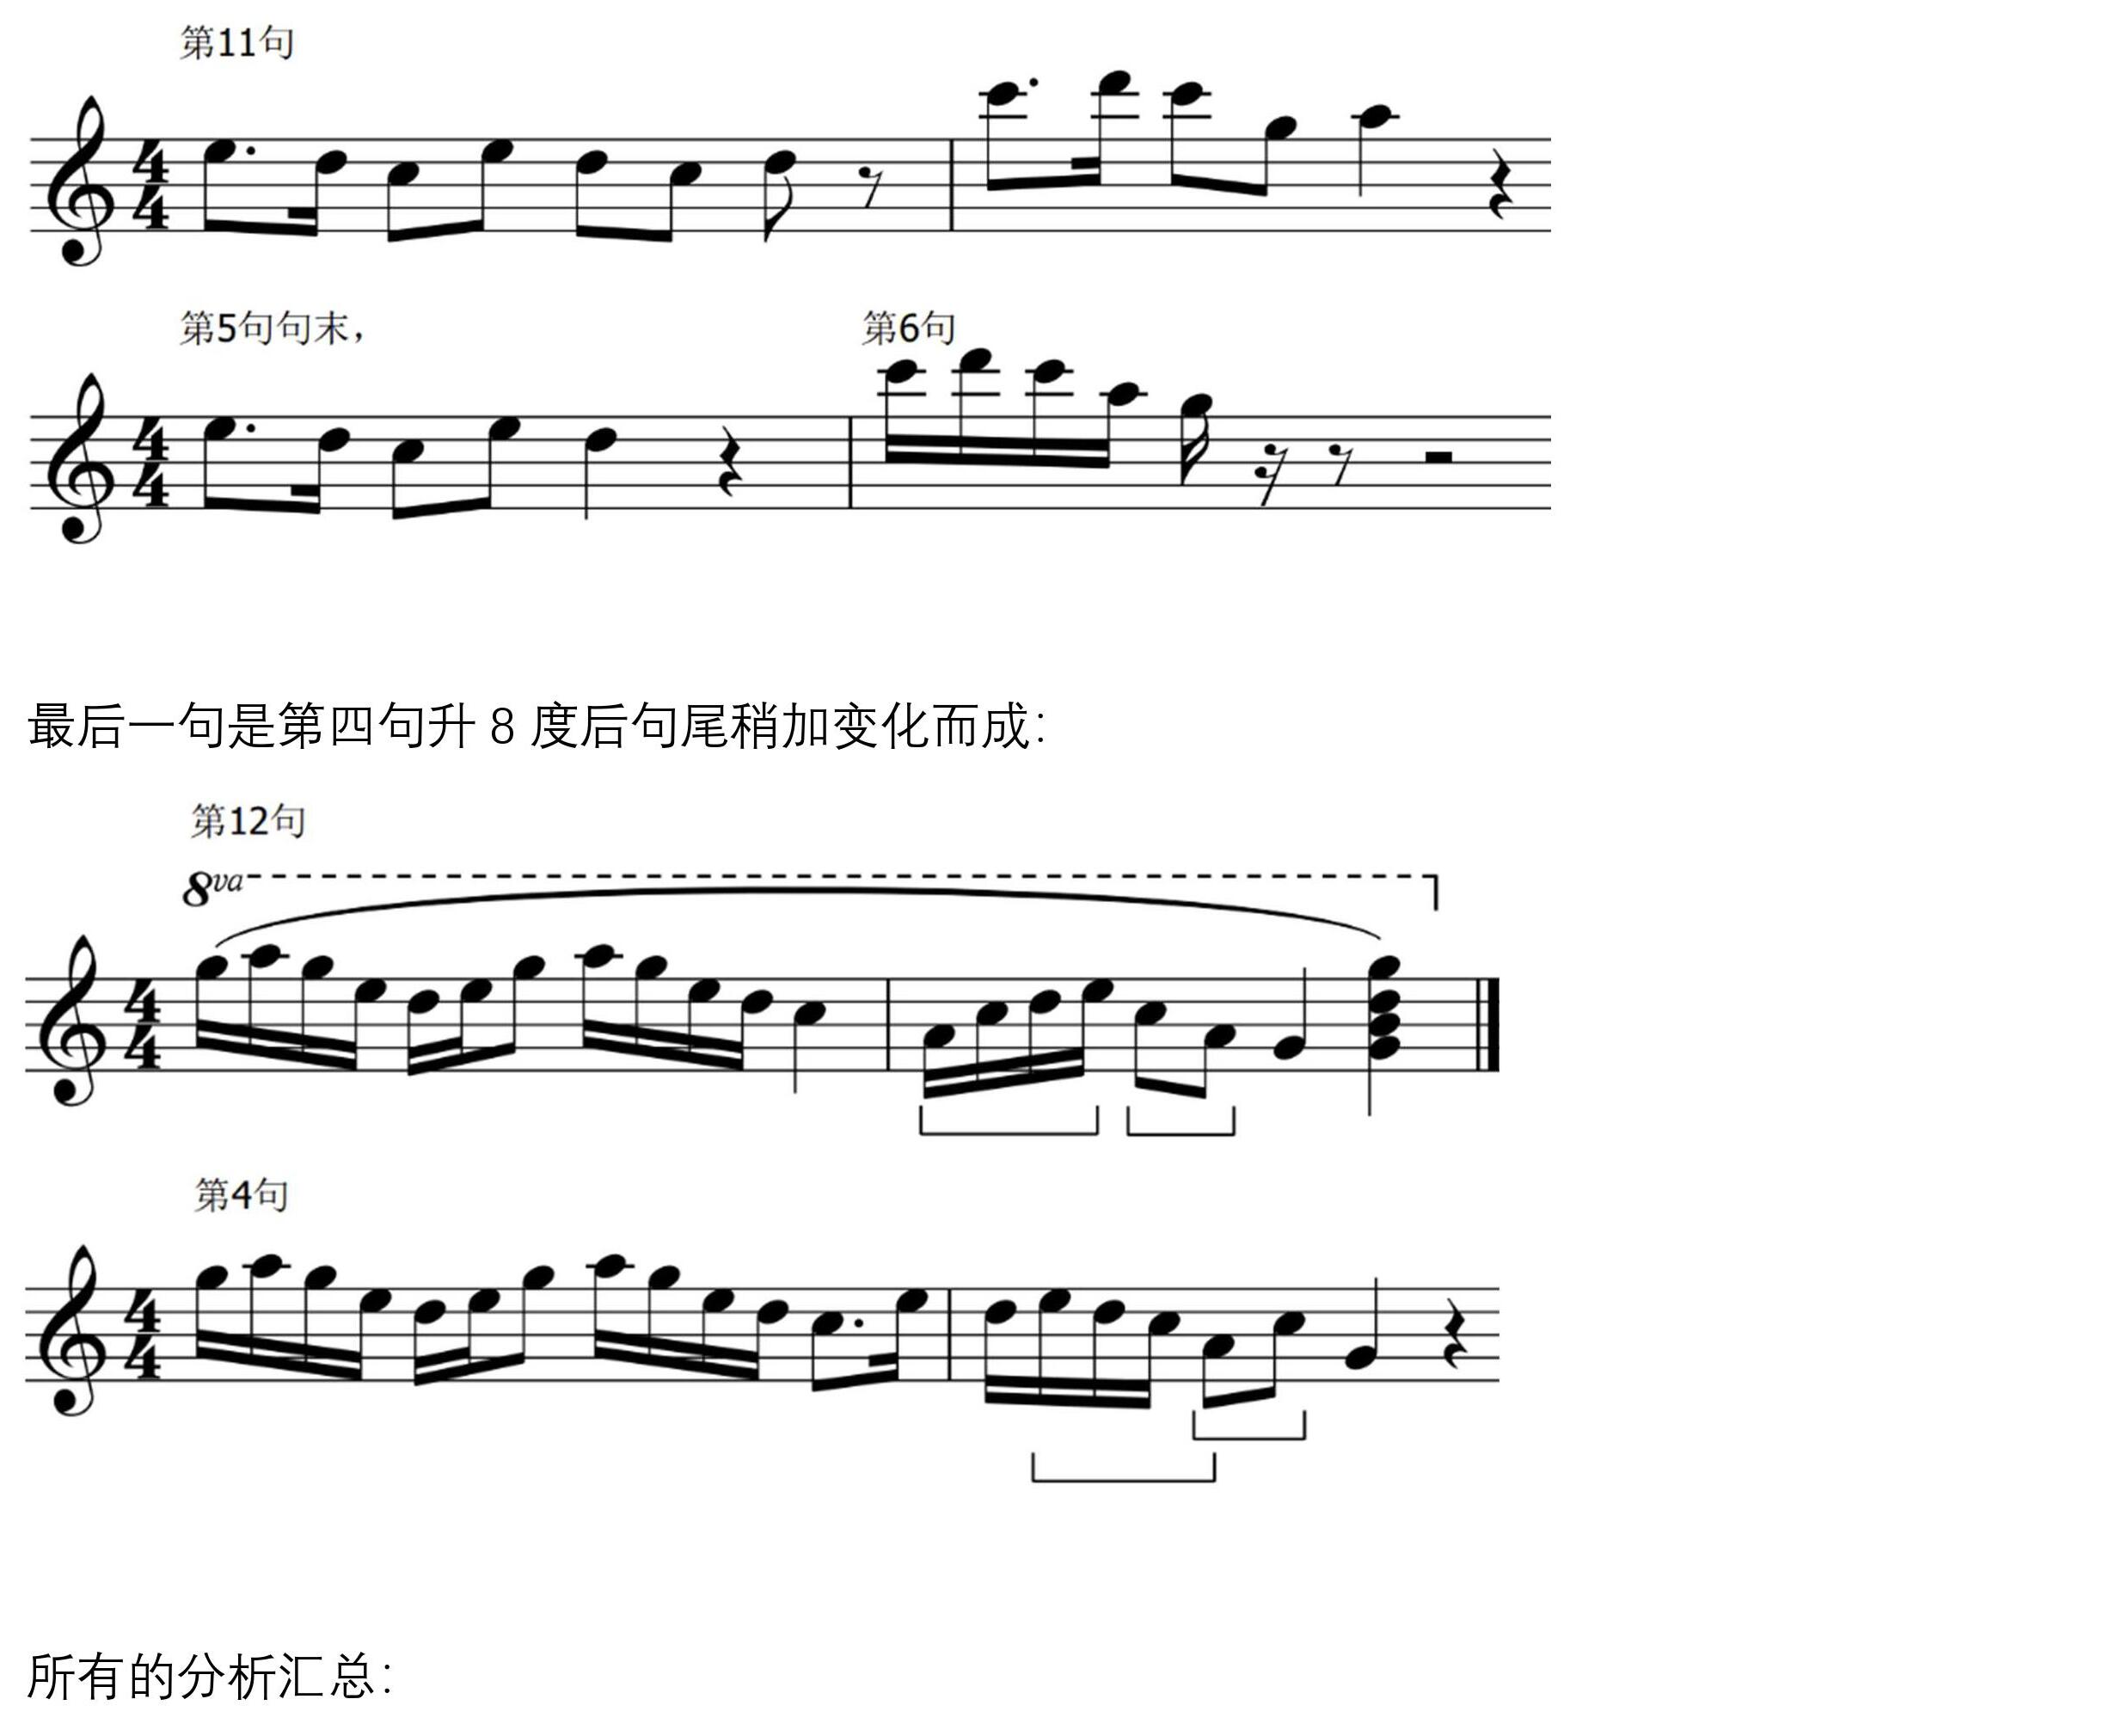 牧童短笛古筝谱-古筝曲谱-中国古筝网